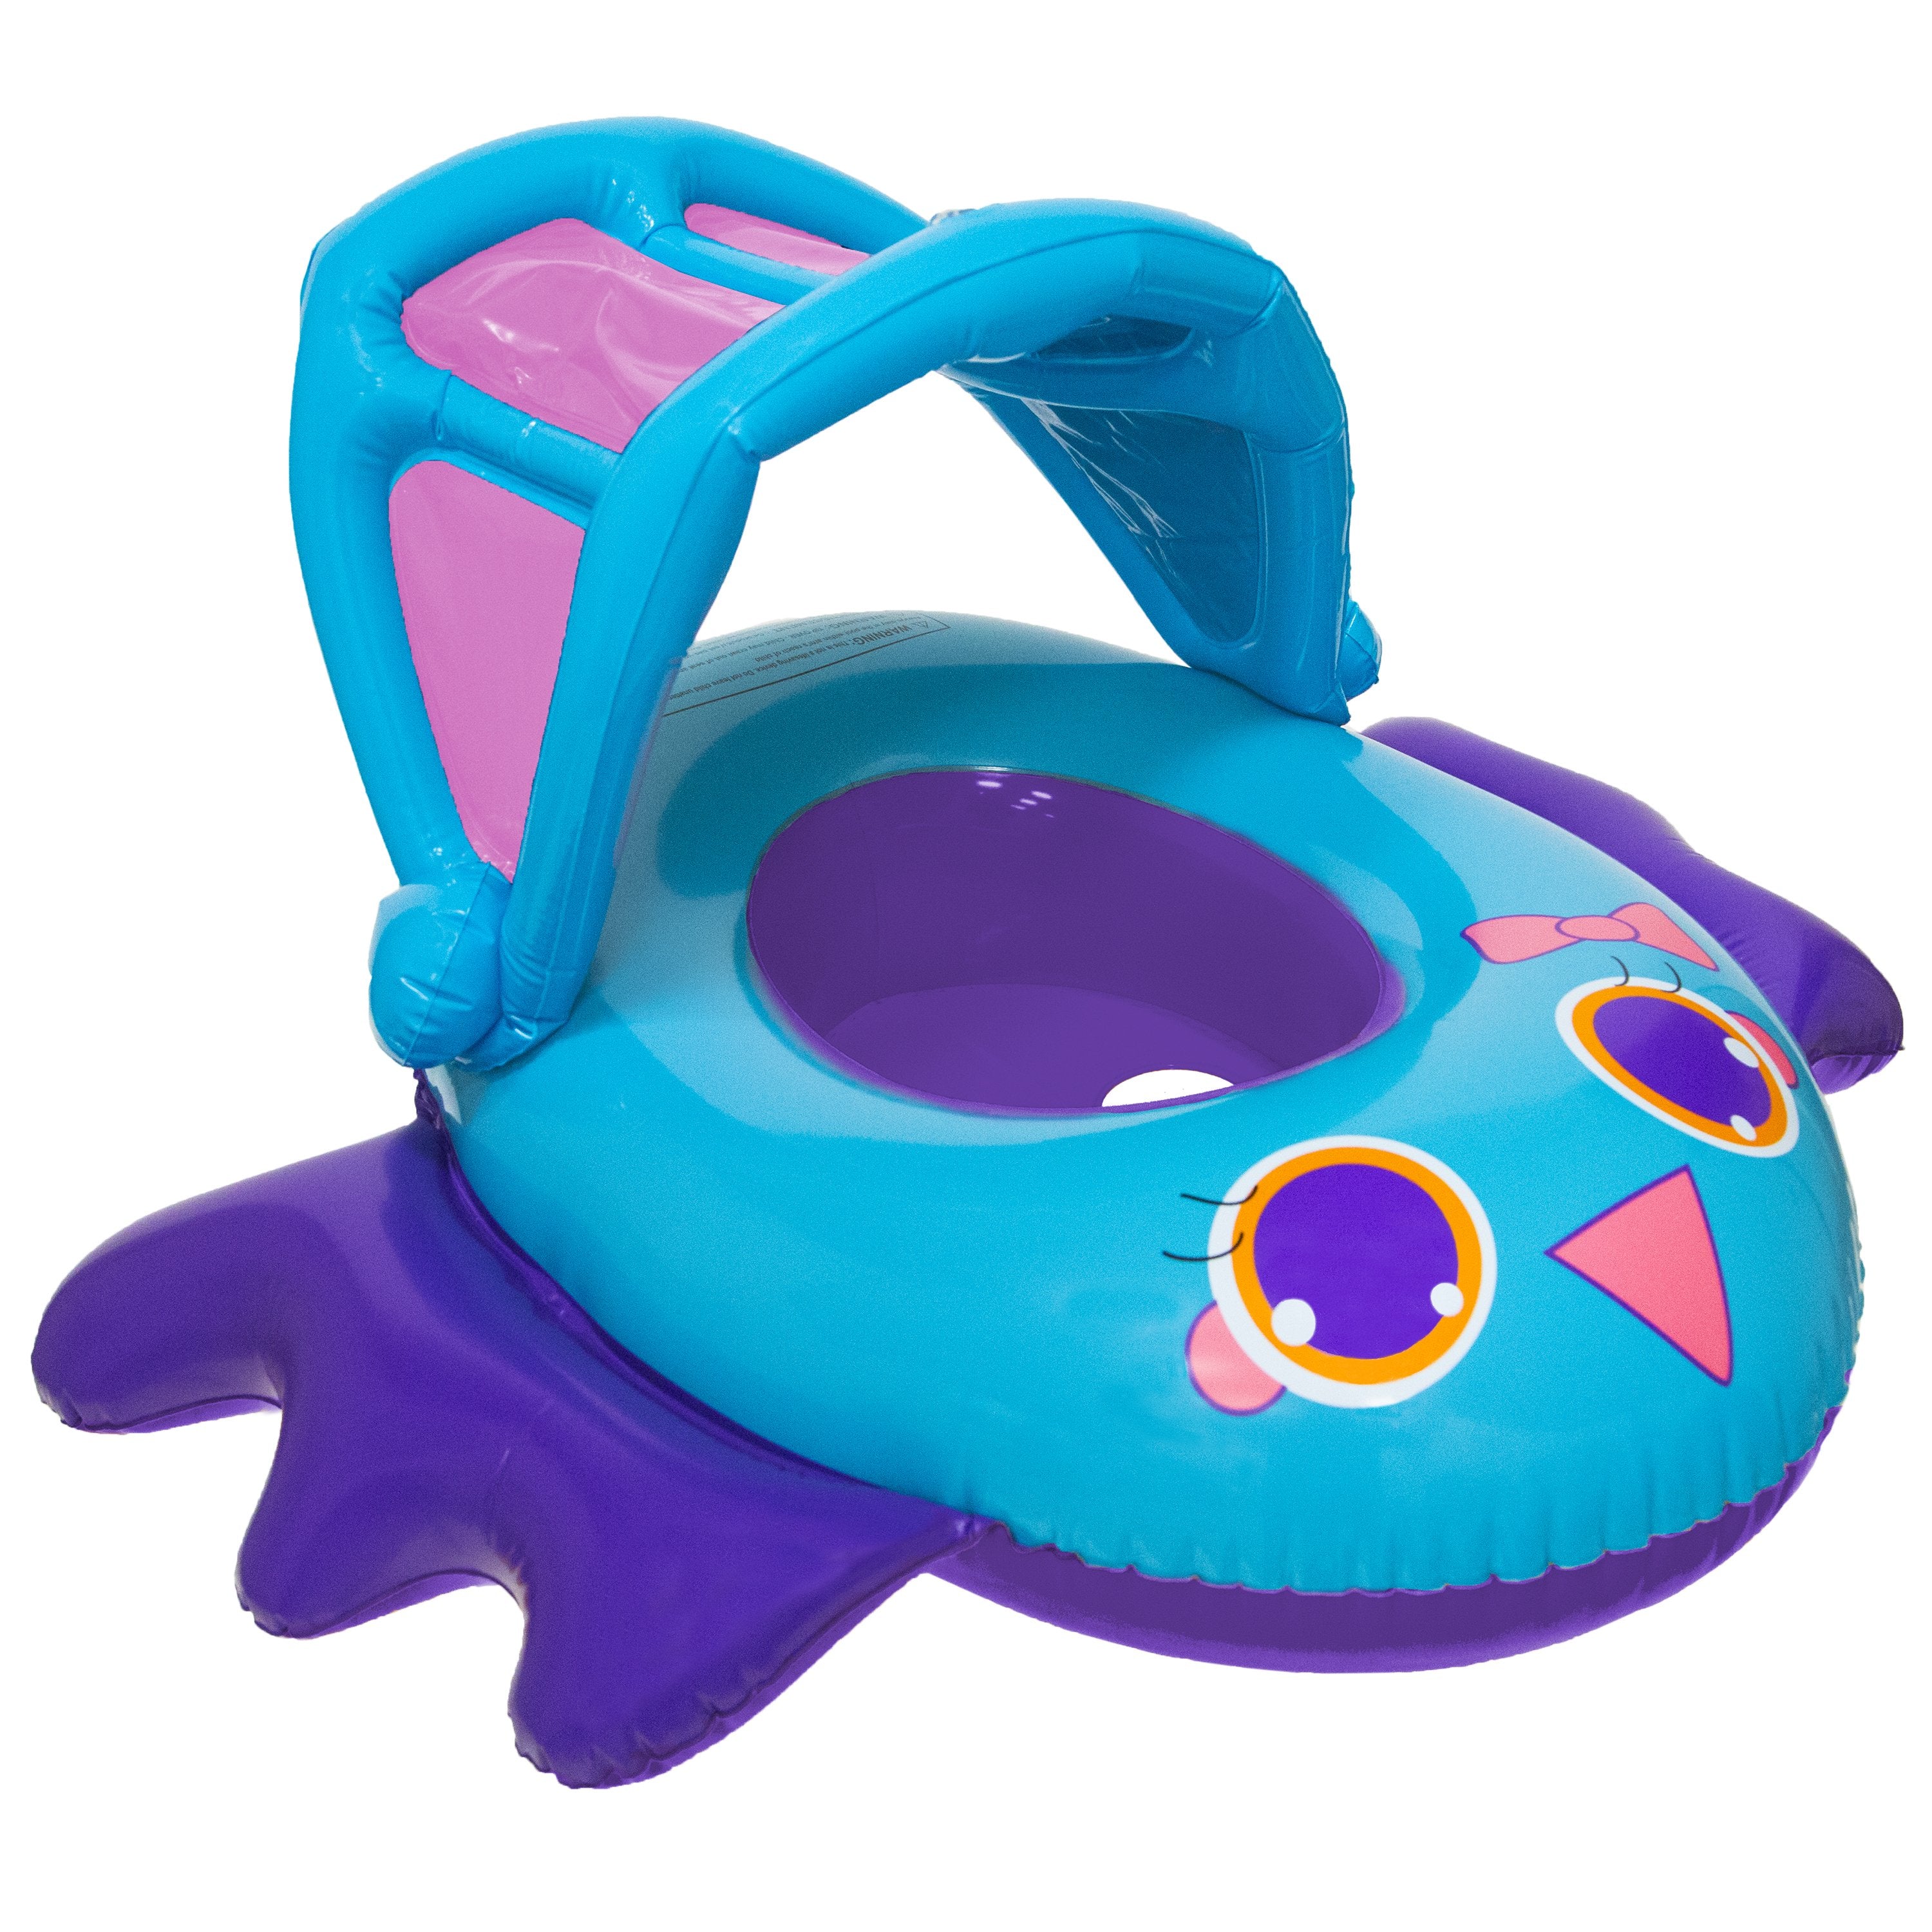 Swimways: Swimways Bote Inflable Para Bebe Con Techo - Color Azul/Morado